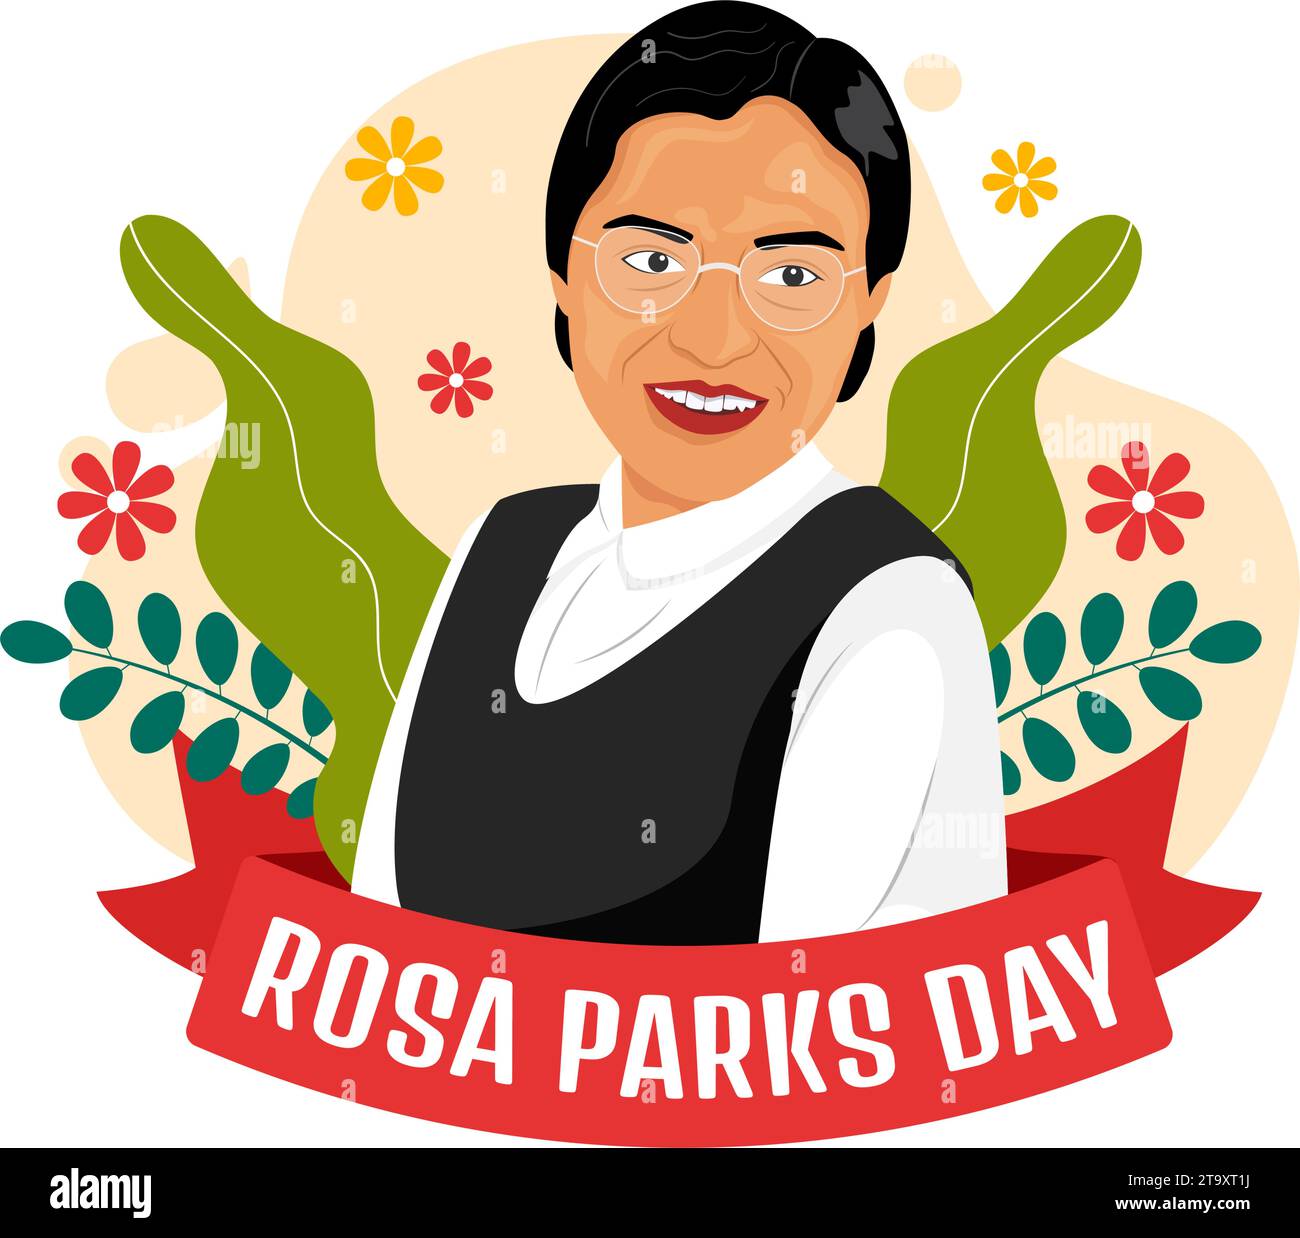 Rosa Parks Day Vector Illustration avec la première Dame des droits civiques, menottes et bus dans le fond de dessin animé plat de célébration des fêtes nationales Illustration de Vecteur